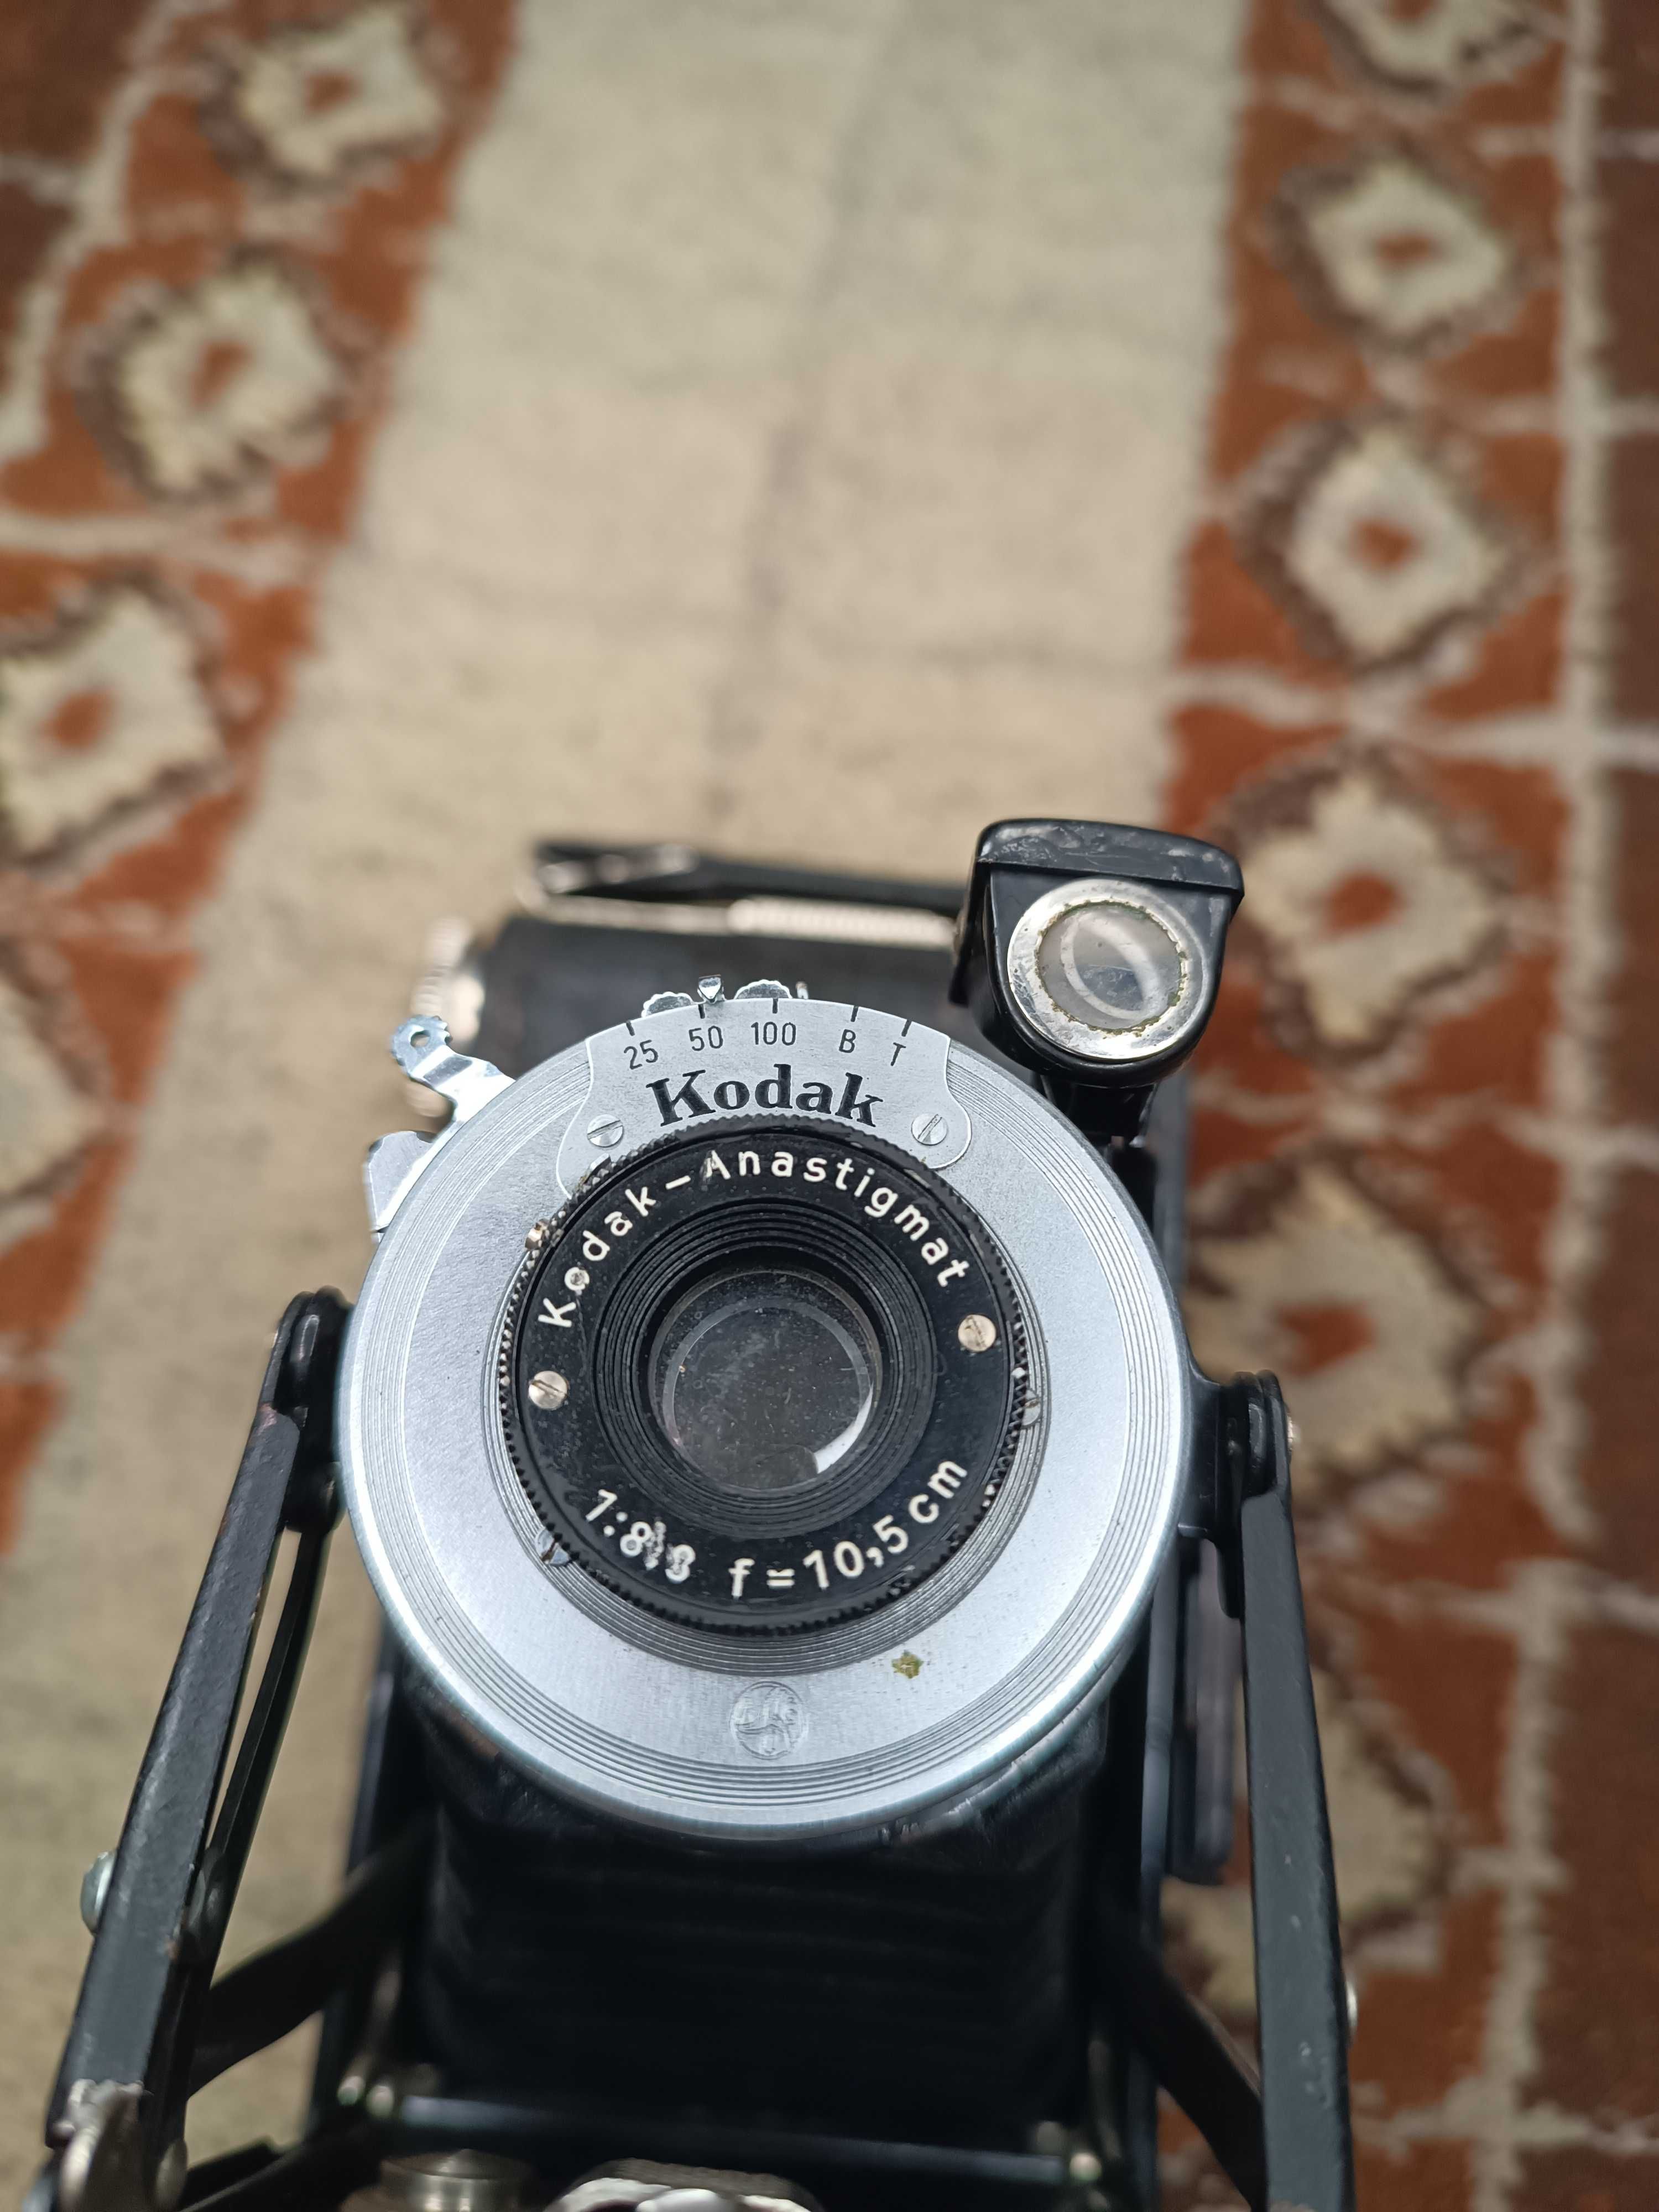 Фотоапарат кодак Kodak Anastigmat старинный СССР советский f=10.5mm